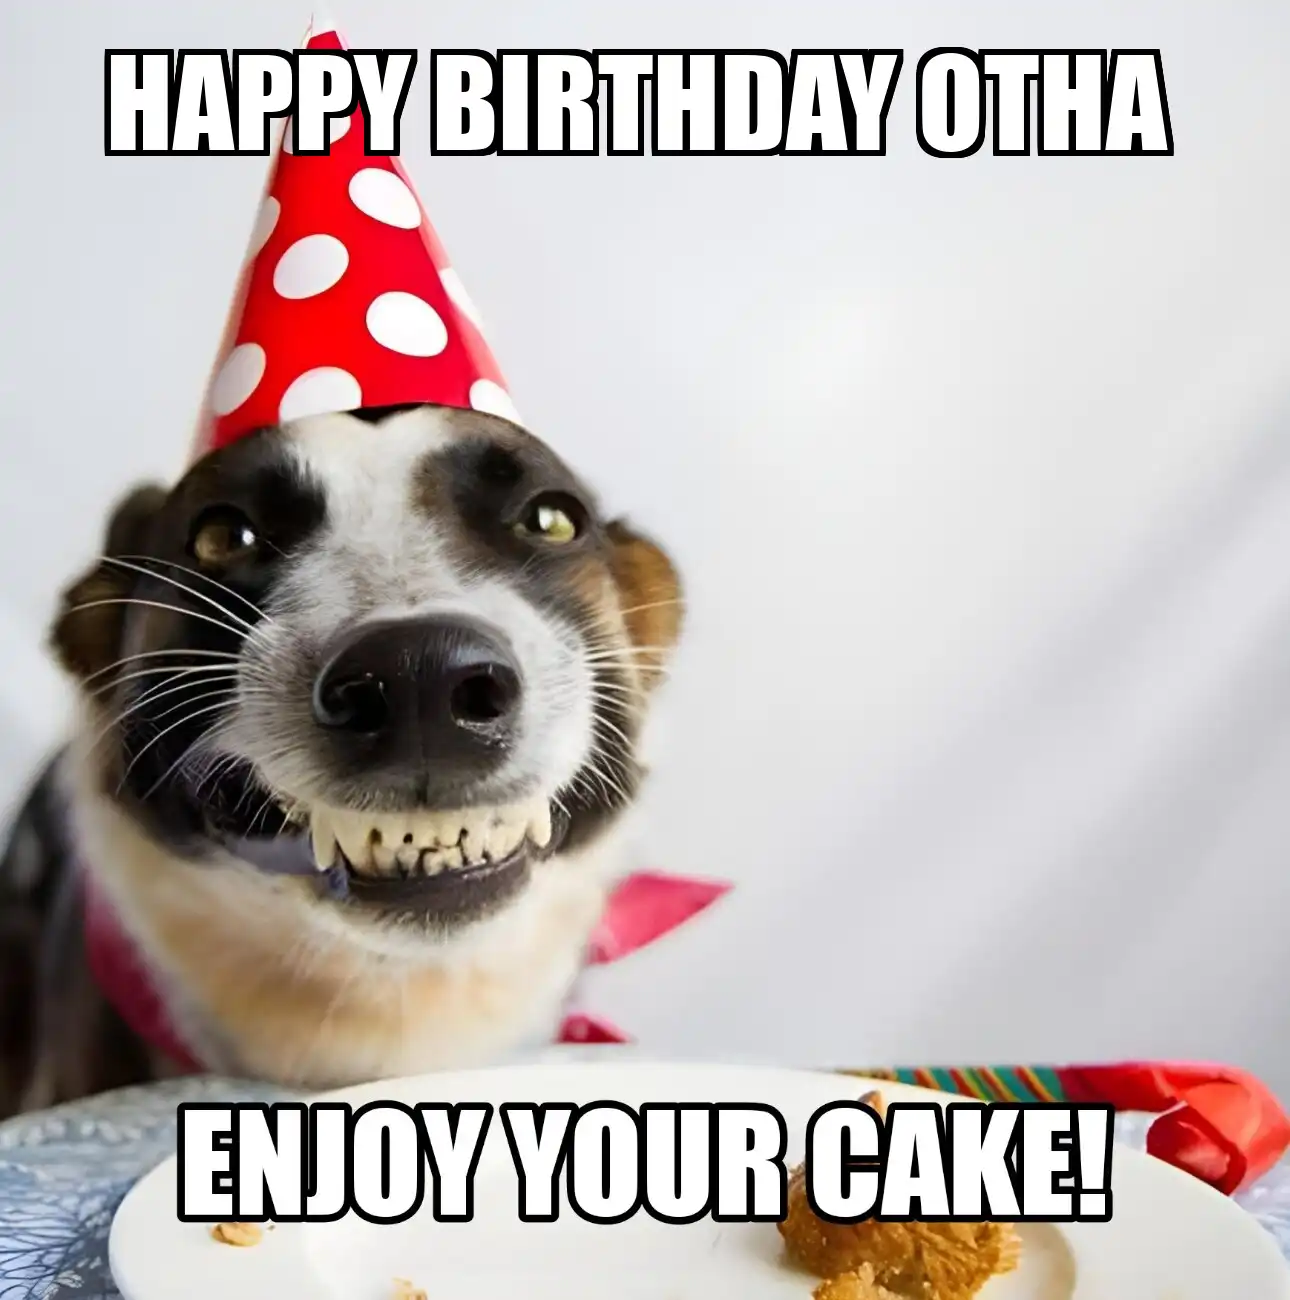 Happy Birthday Otha Enjoy Your Cake Dog Meme